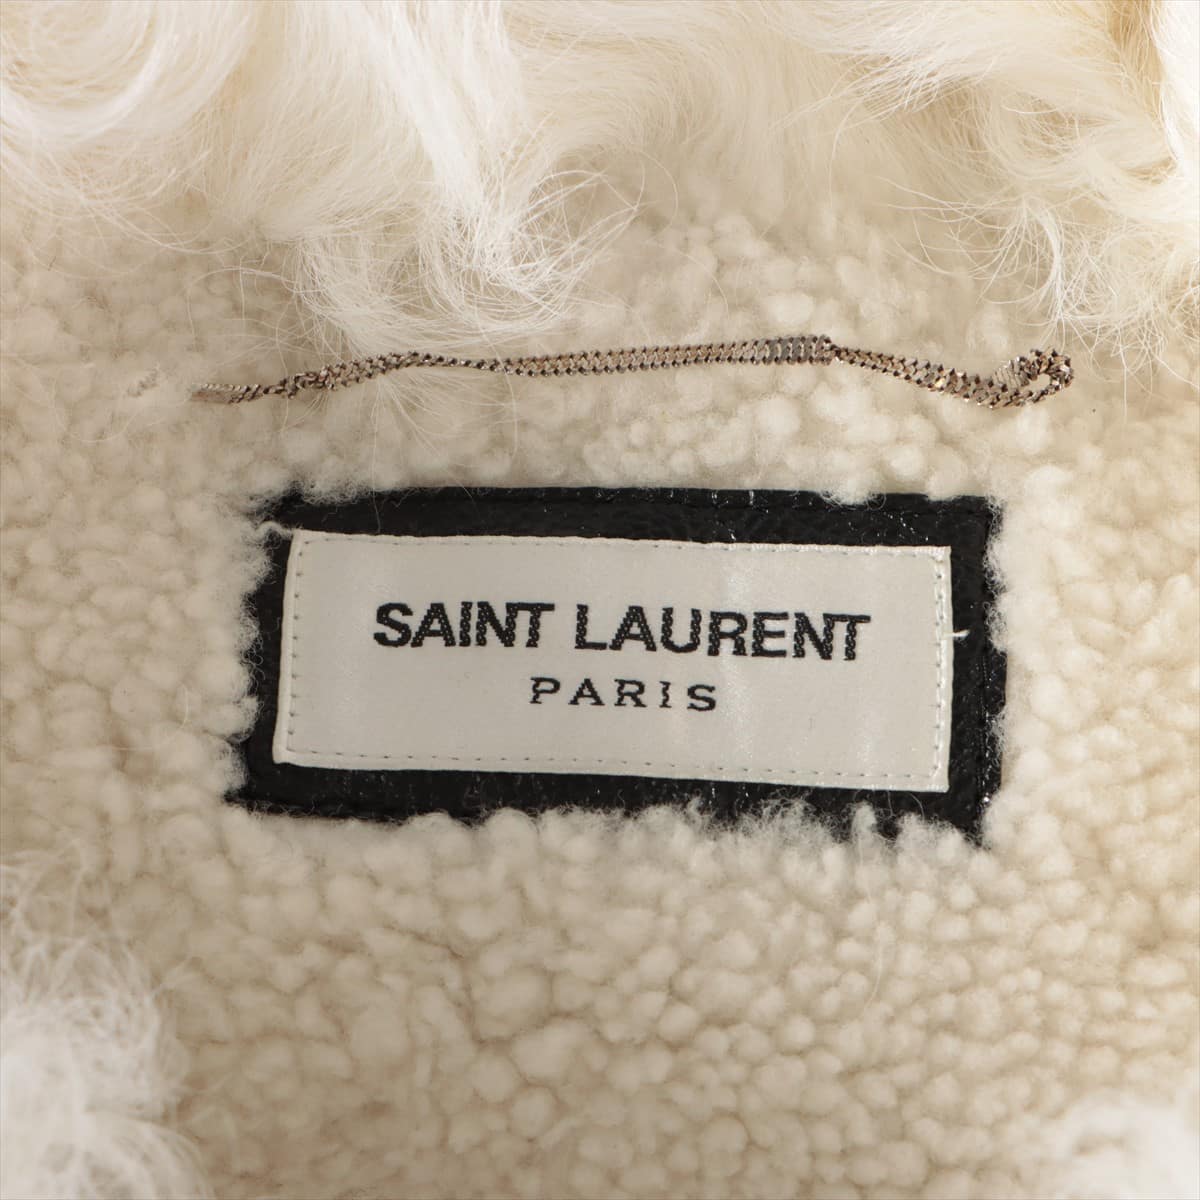 Saint Laurent Paris 17 years Mouton × Leather Blouson 50 Men's Black